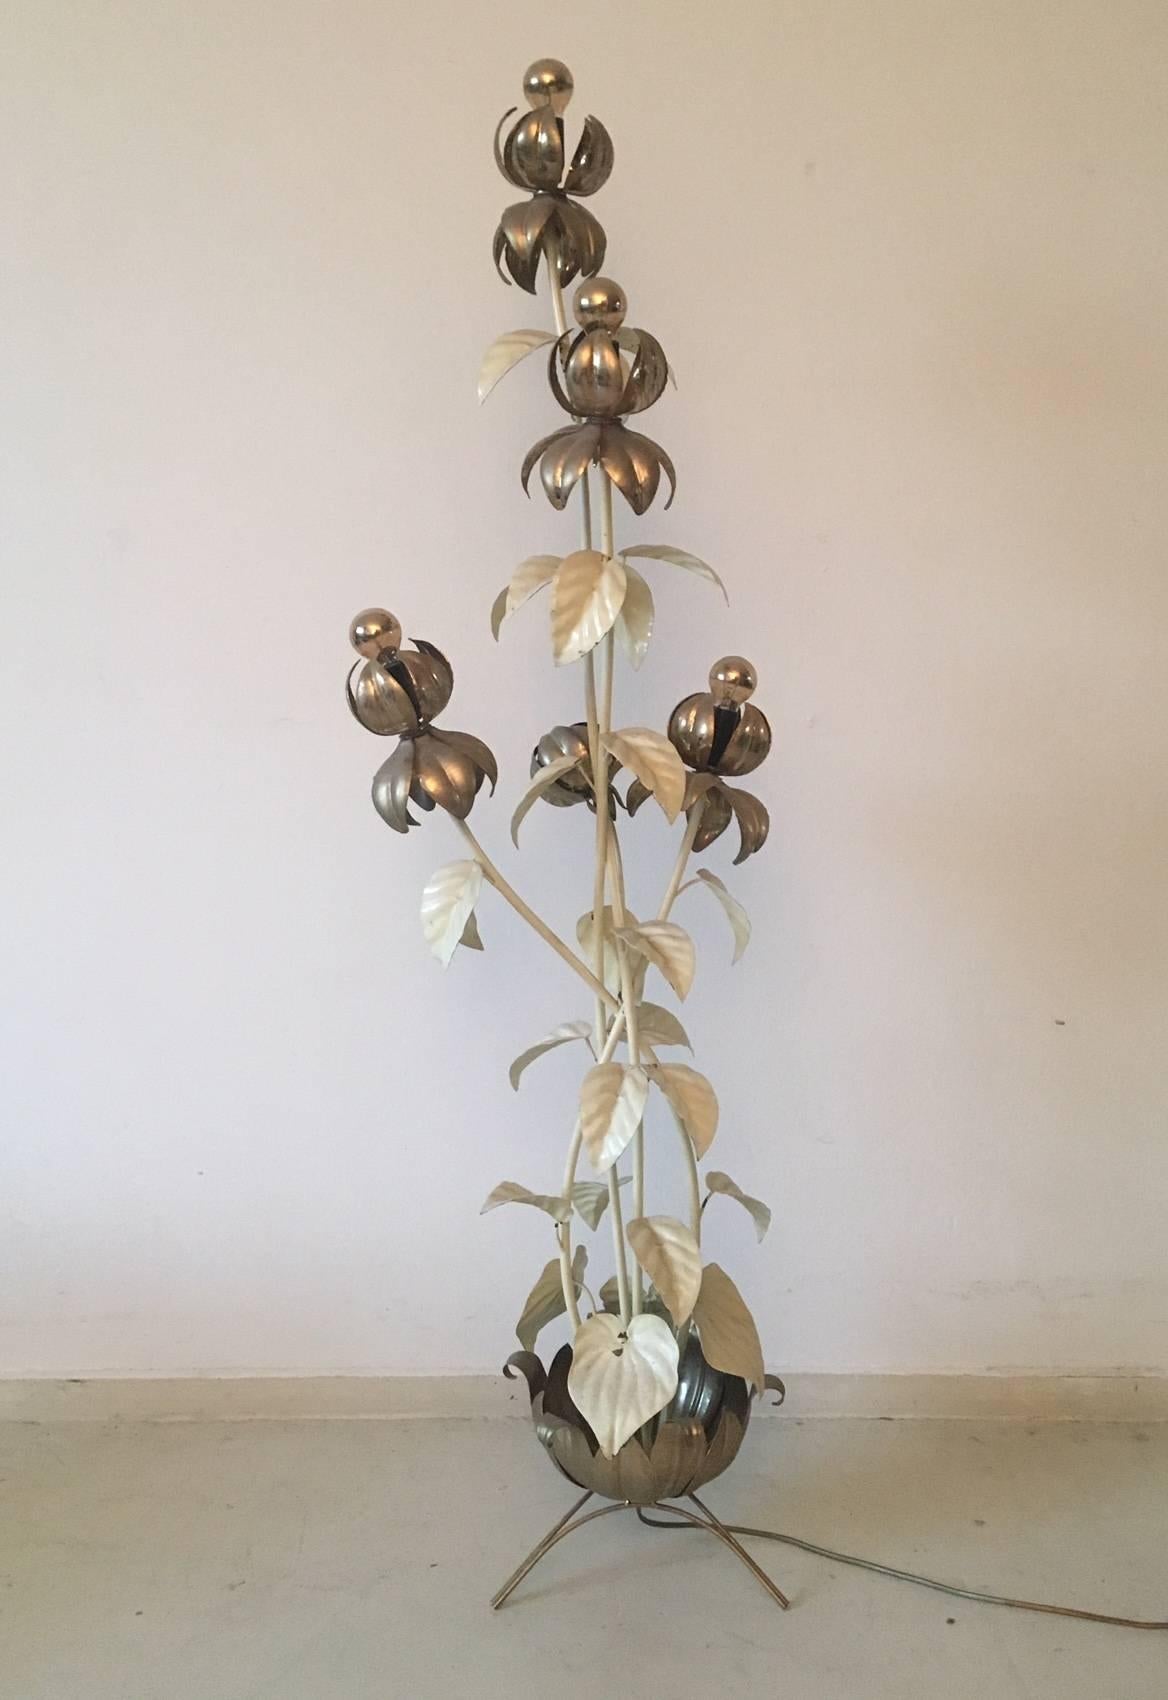 Cette œuvre d'art en métal présente cinq fleurs, dont quatre avec une ampoule. Certaines parties de la lampe sont (à l'origine) laquées en blanc, comme on le voit souvent dans les œuvres de Hans Kogl (fabricant de nombreuses lampes en forme de